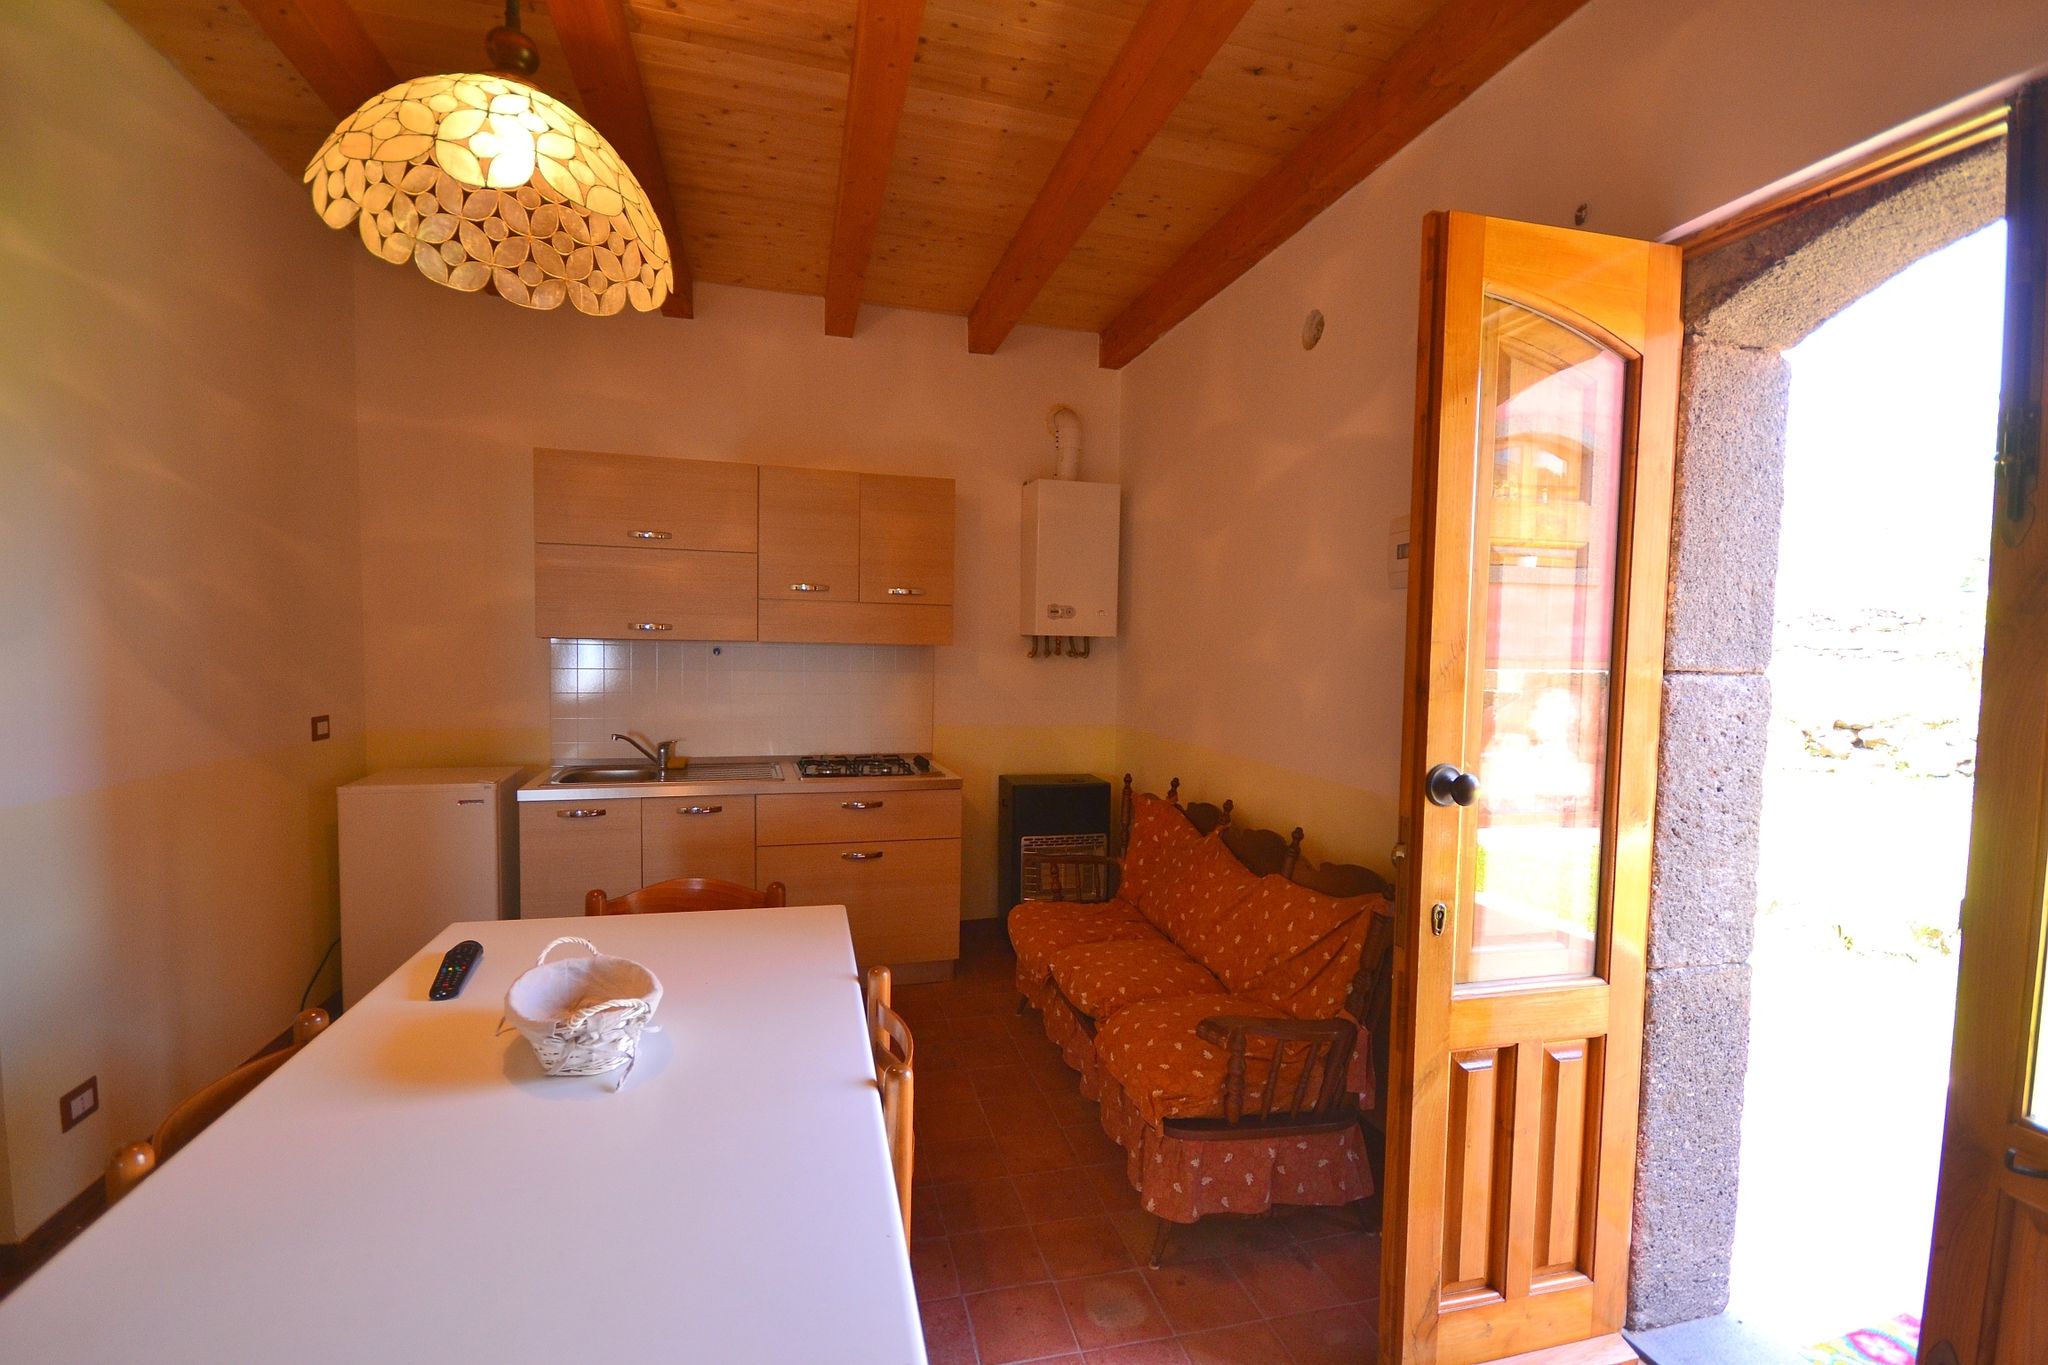 Maison de vacances près de la forêt à Santa Venerina, Sicile